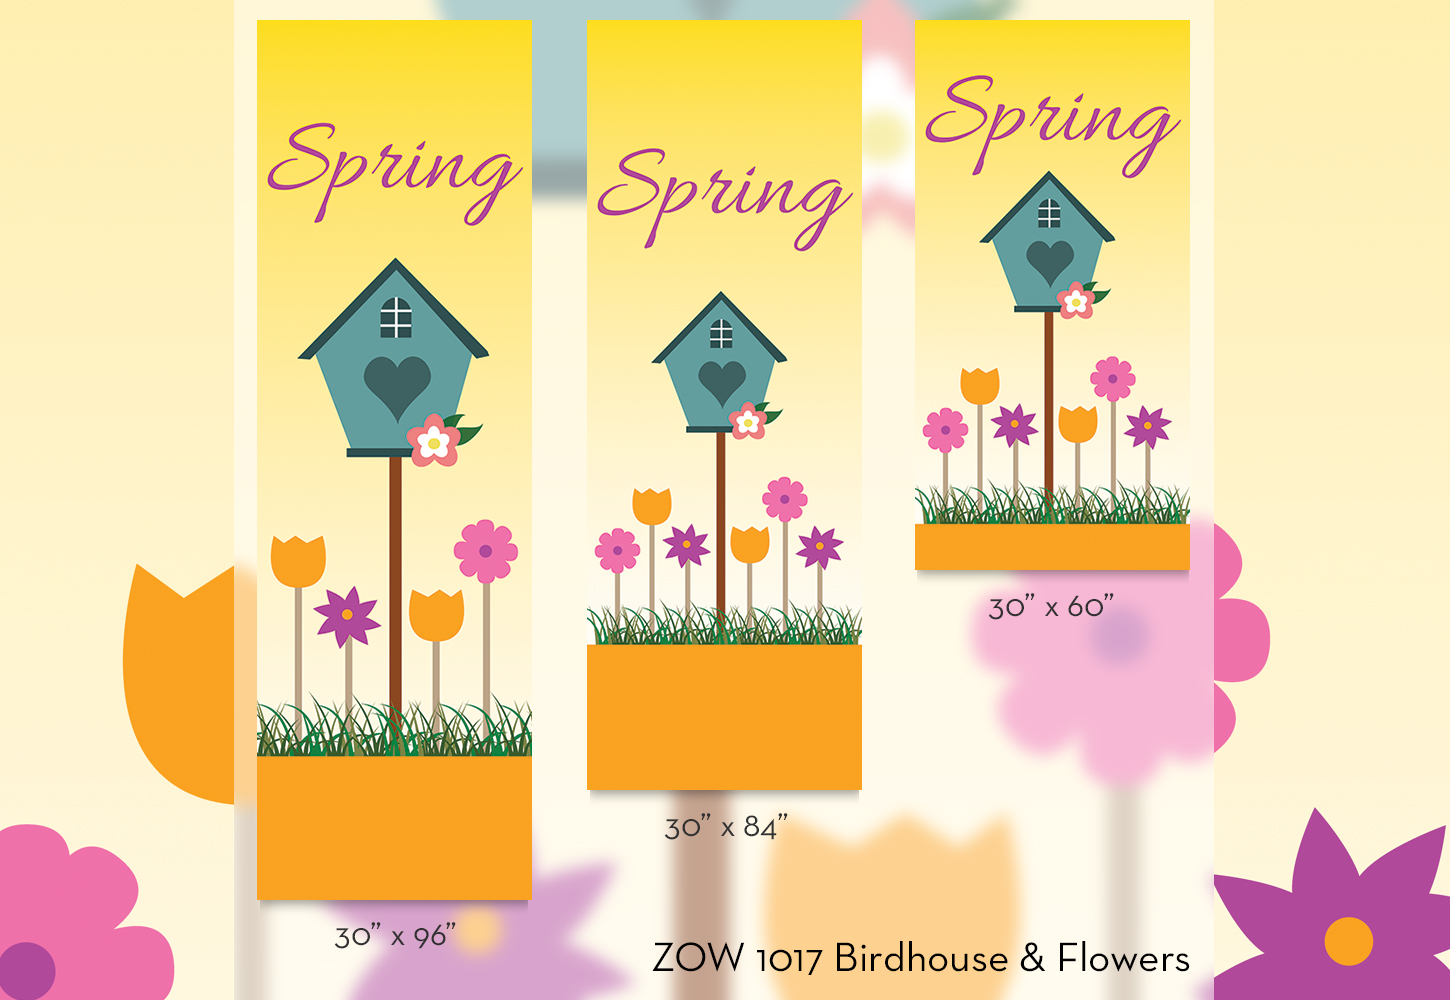 ZOW 1017 Birdhouse & Flowers